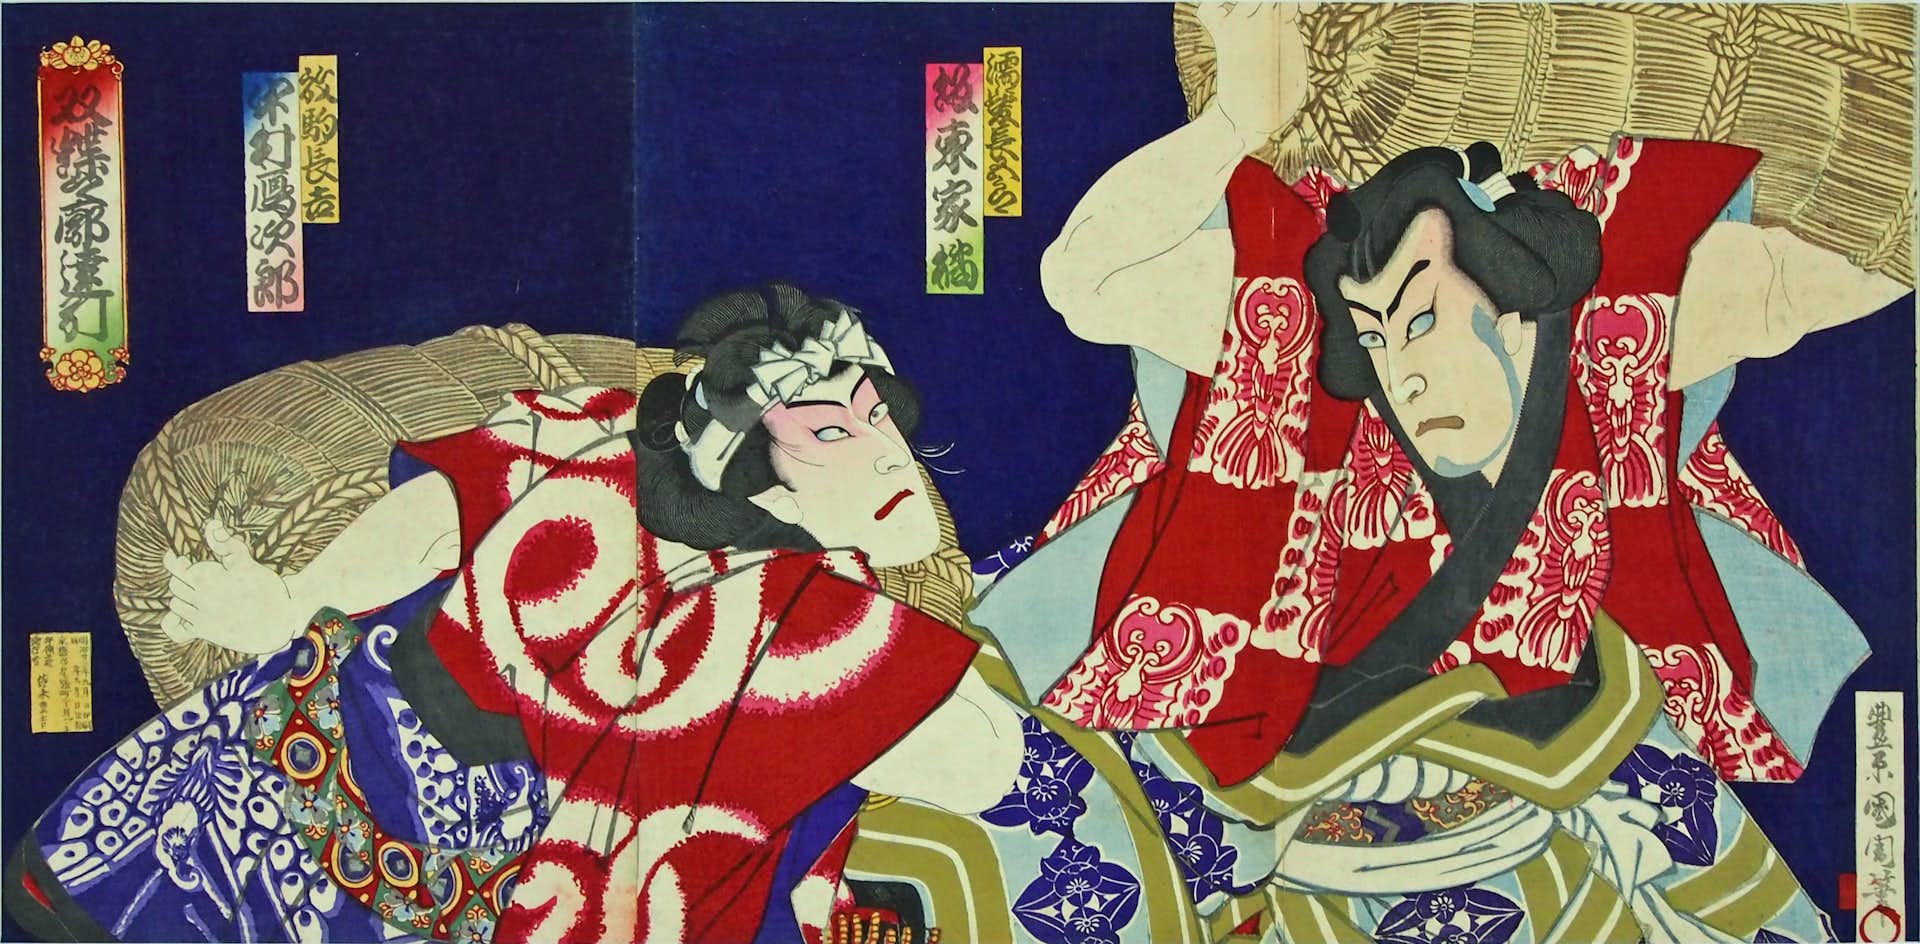 浮世絵で見る歌舞伎の世界 とちぎ蔵の街美術館 美術手帖